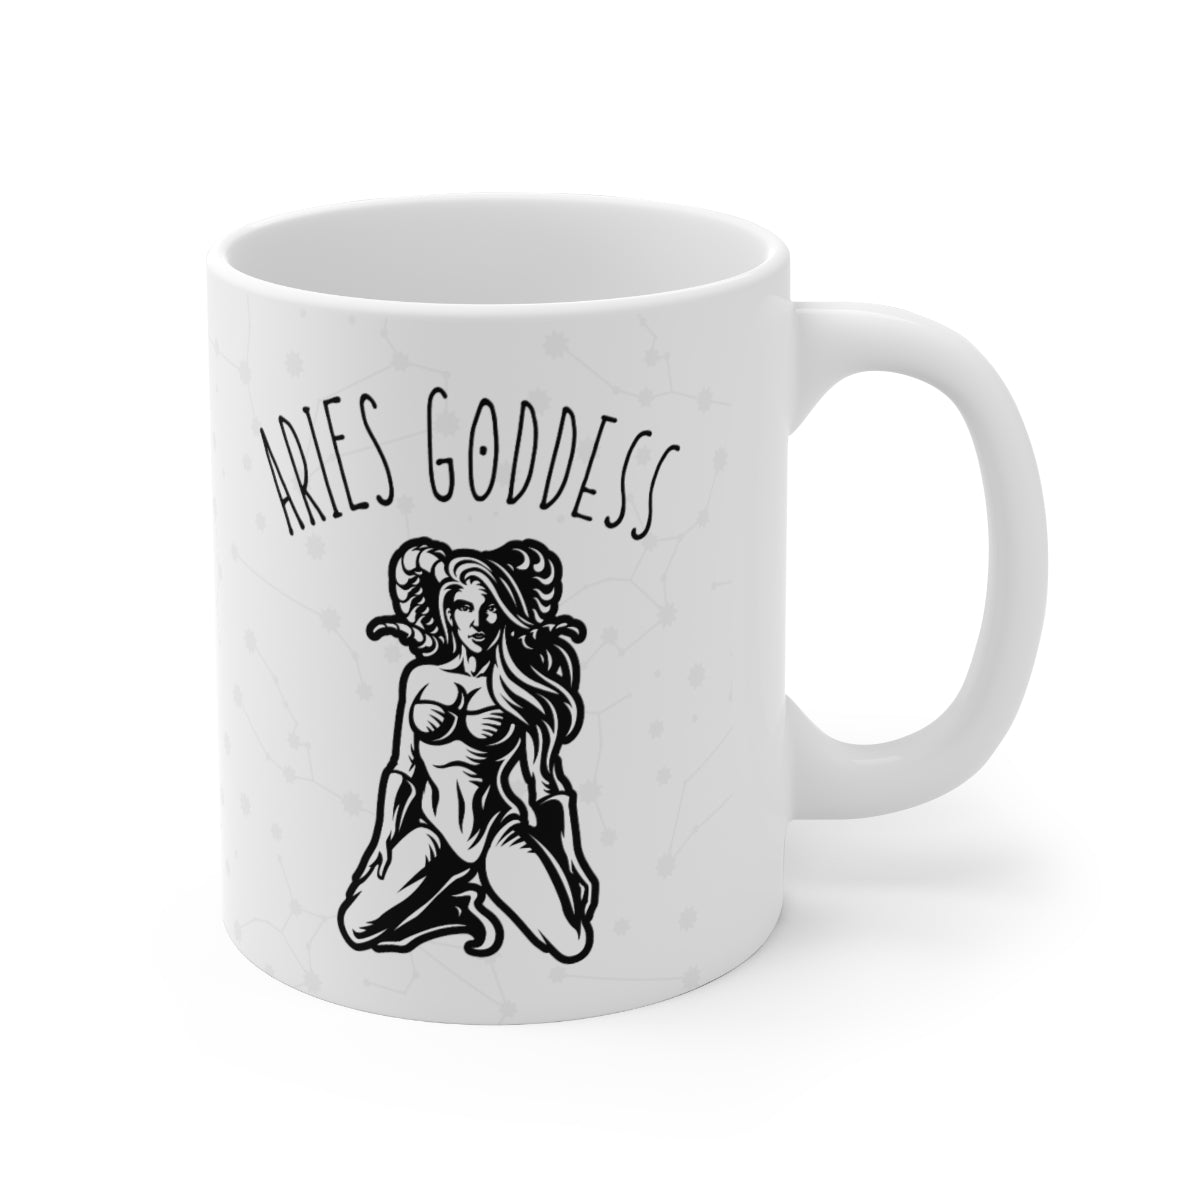 Aries Goddess Mug 4